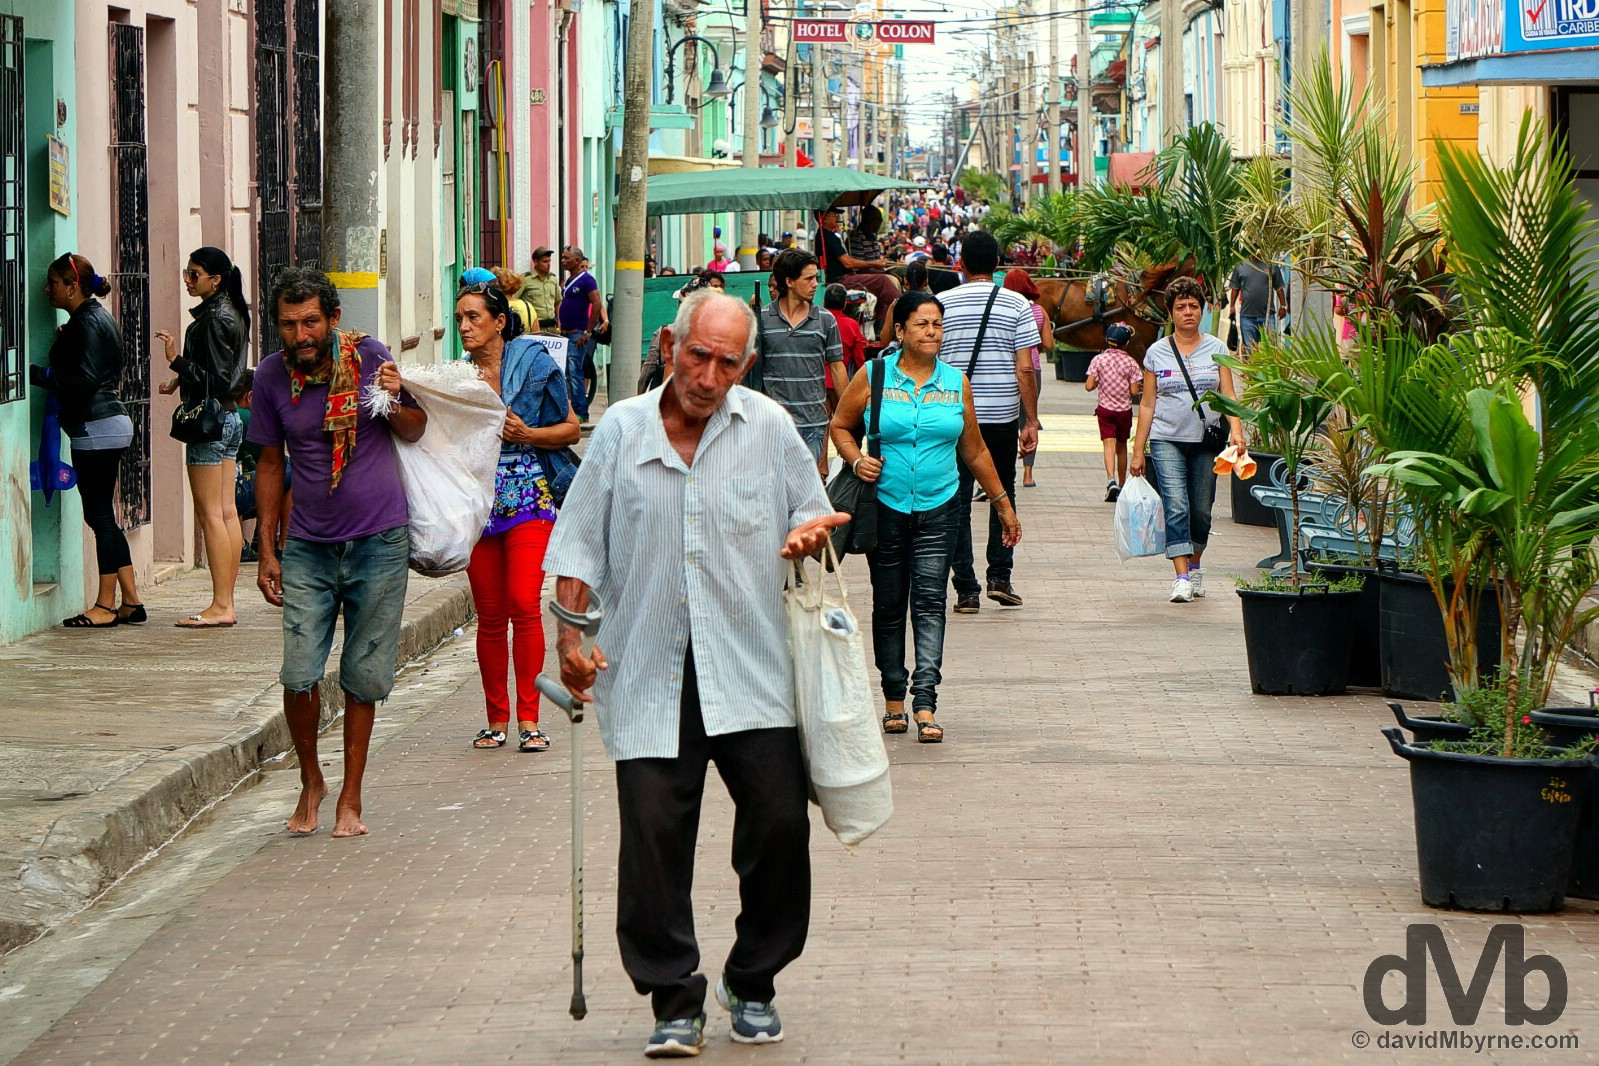 Republica, Camaguey, Cuba. May 4, 2015.